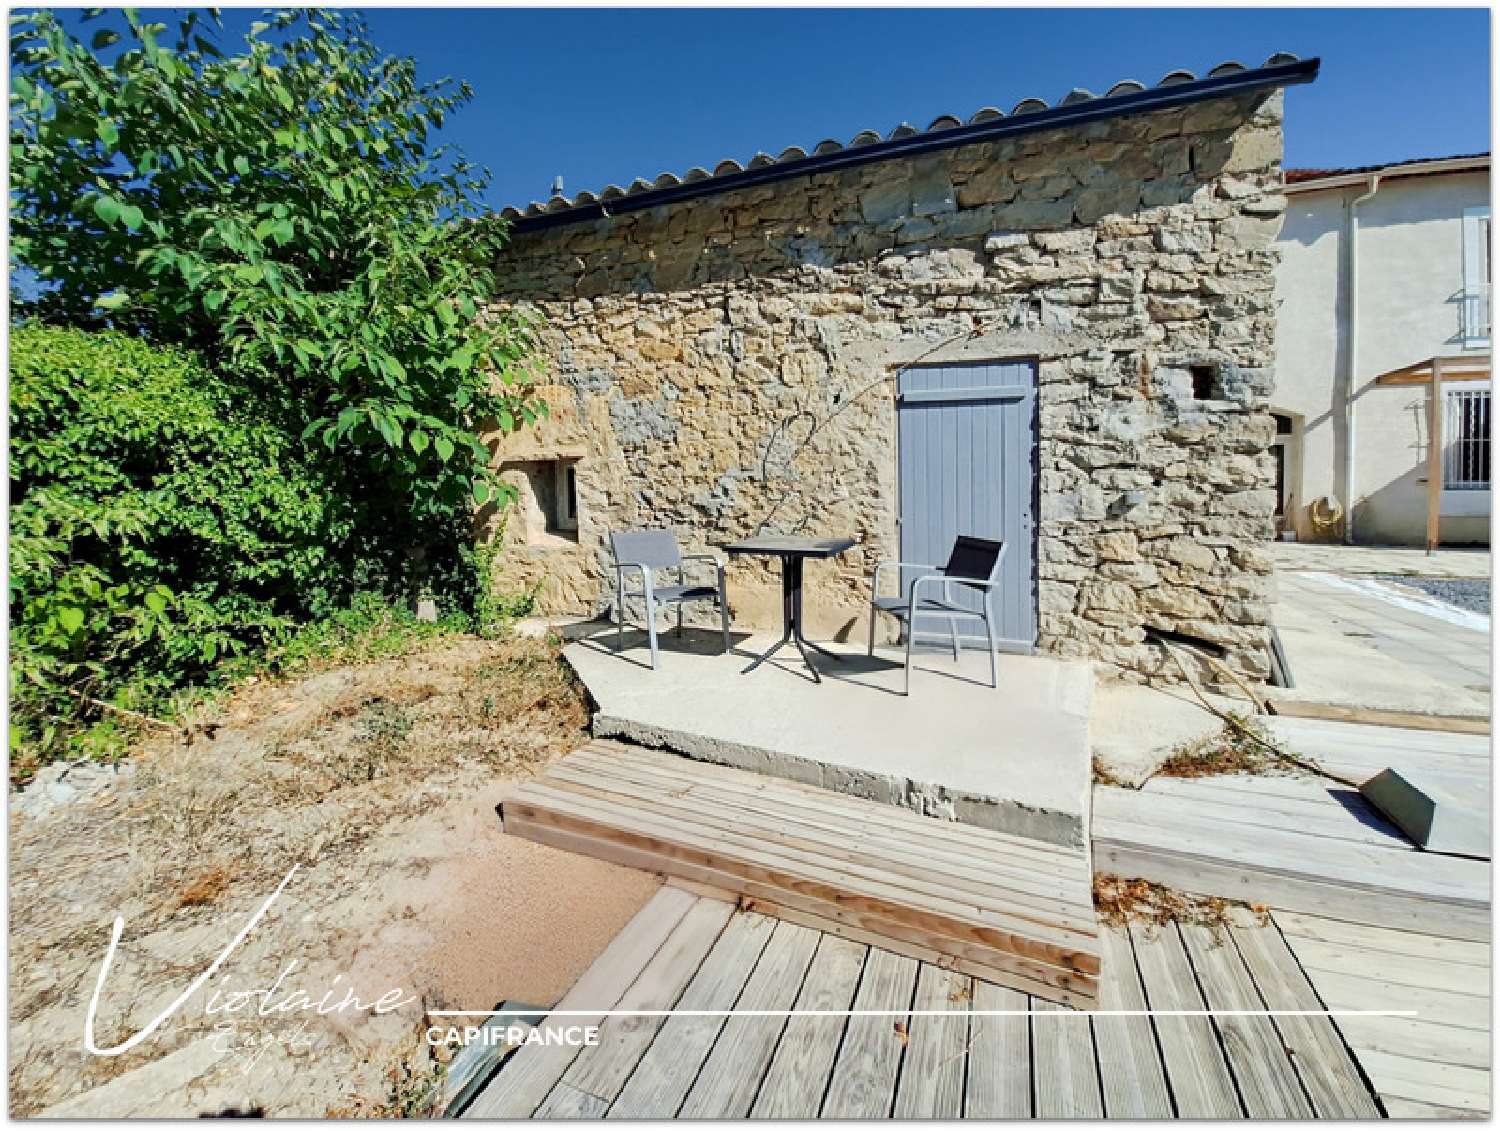  à vendre maison de village Olonzac Hérault 6